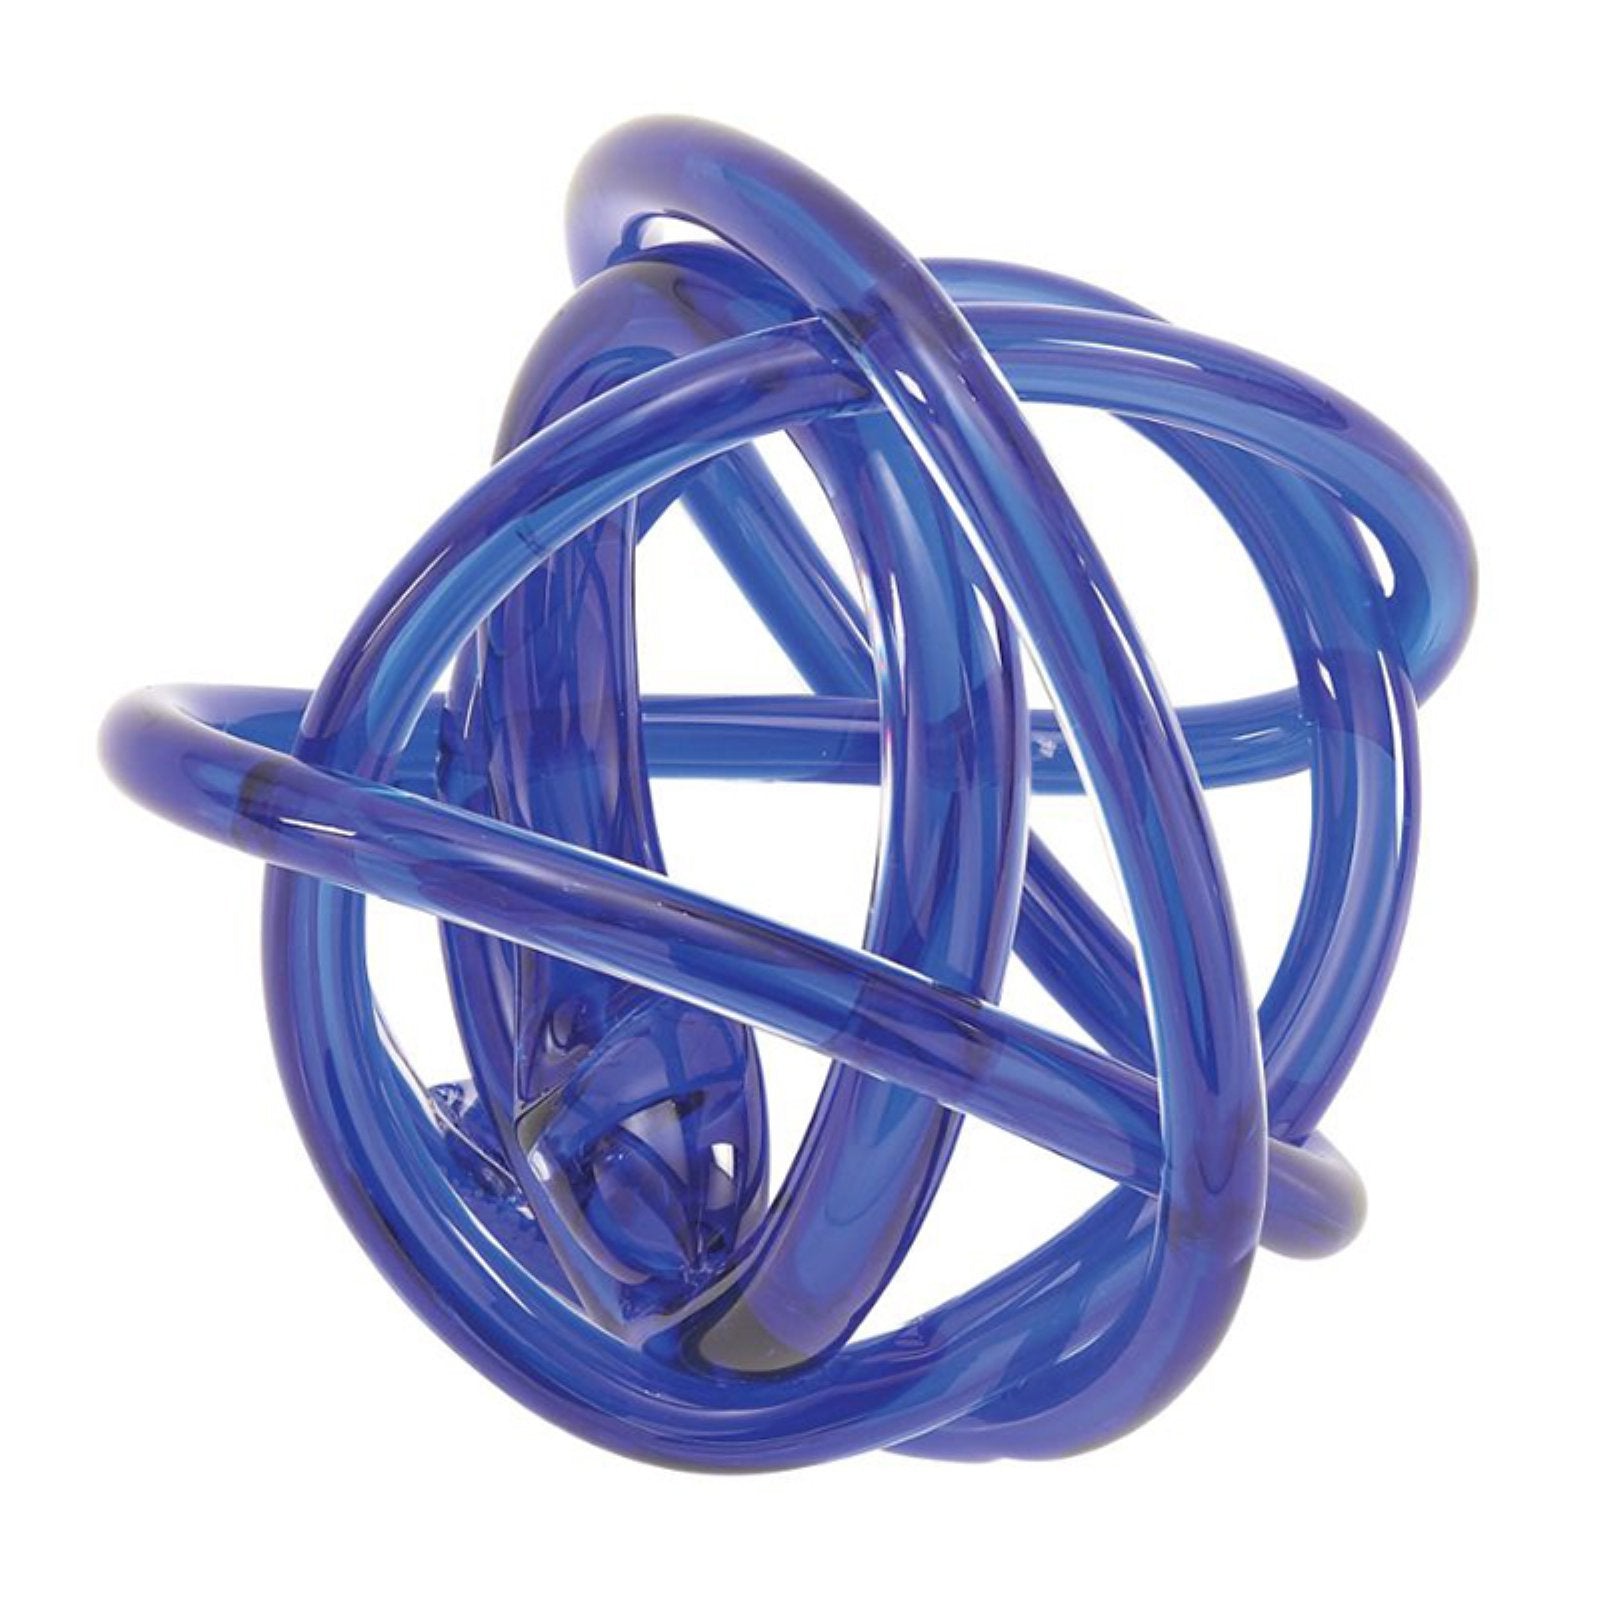 Blue Handblown Glass Knot